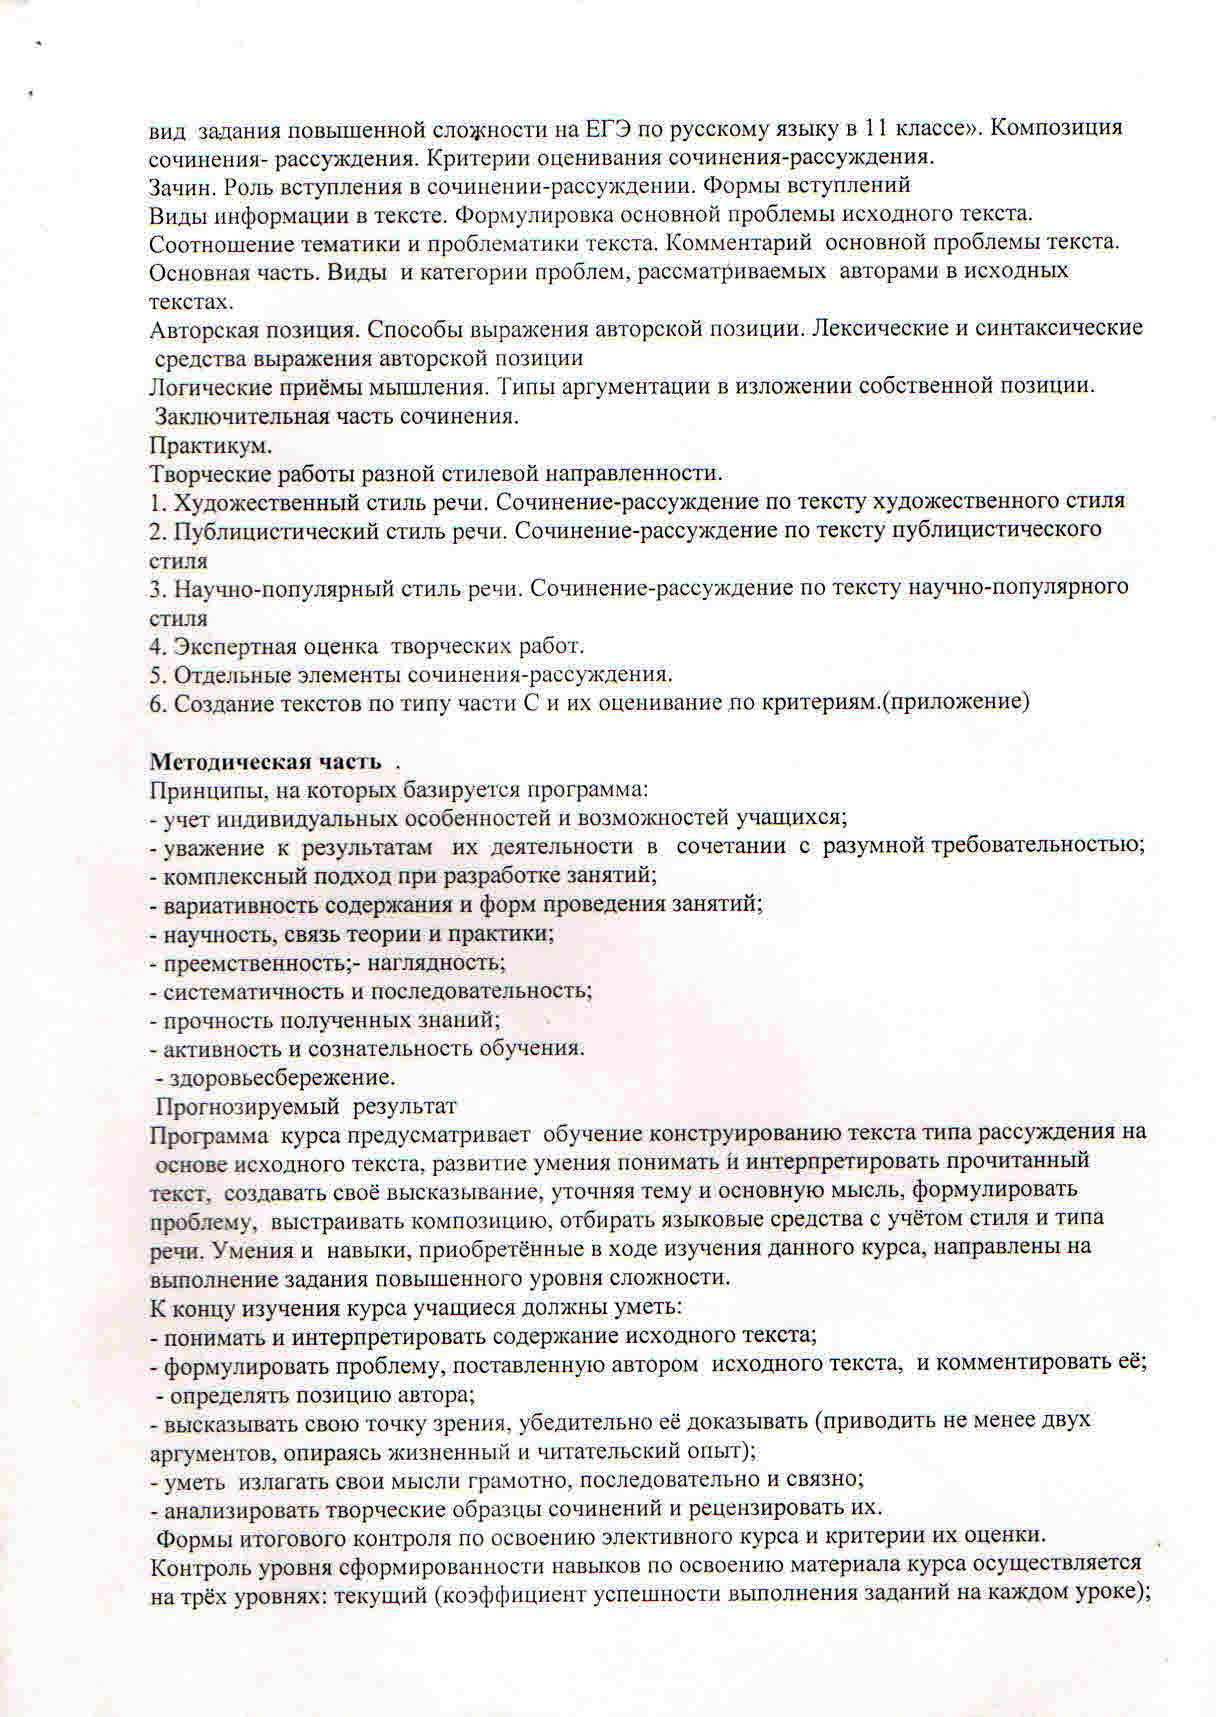 Программа факультативного курса по русскому языку Учимся писать рецензию, 11 класс